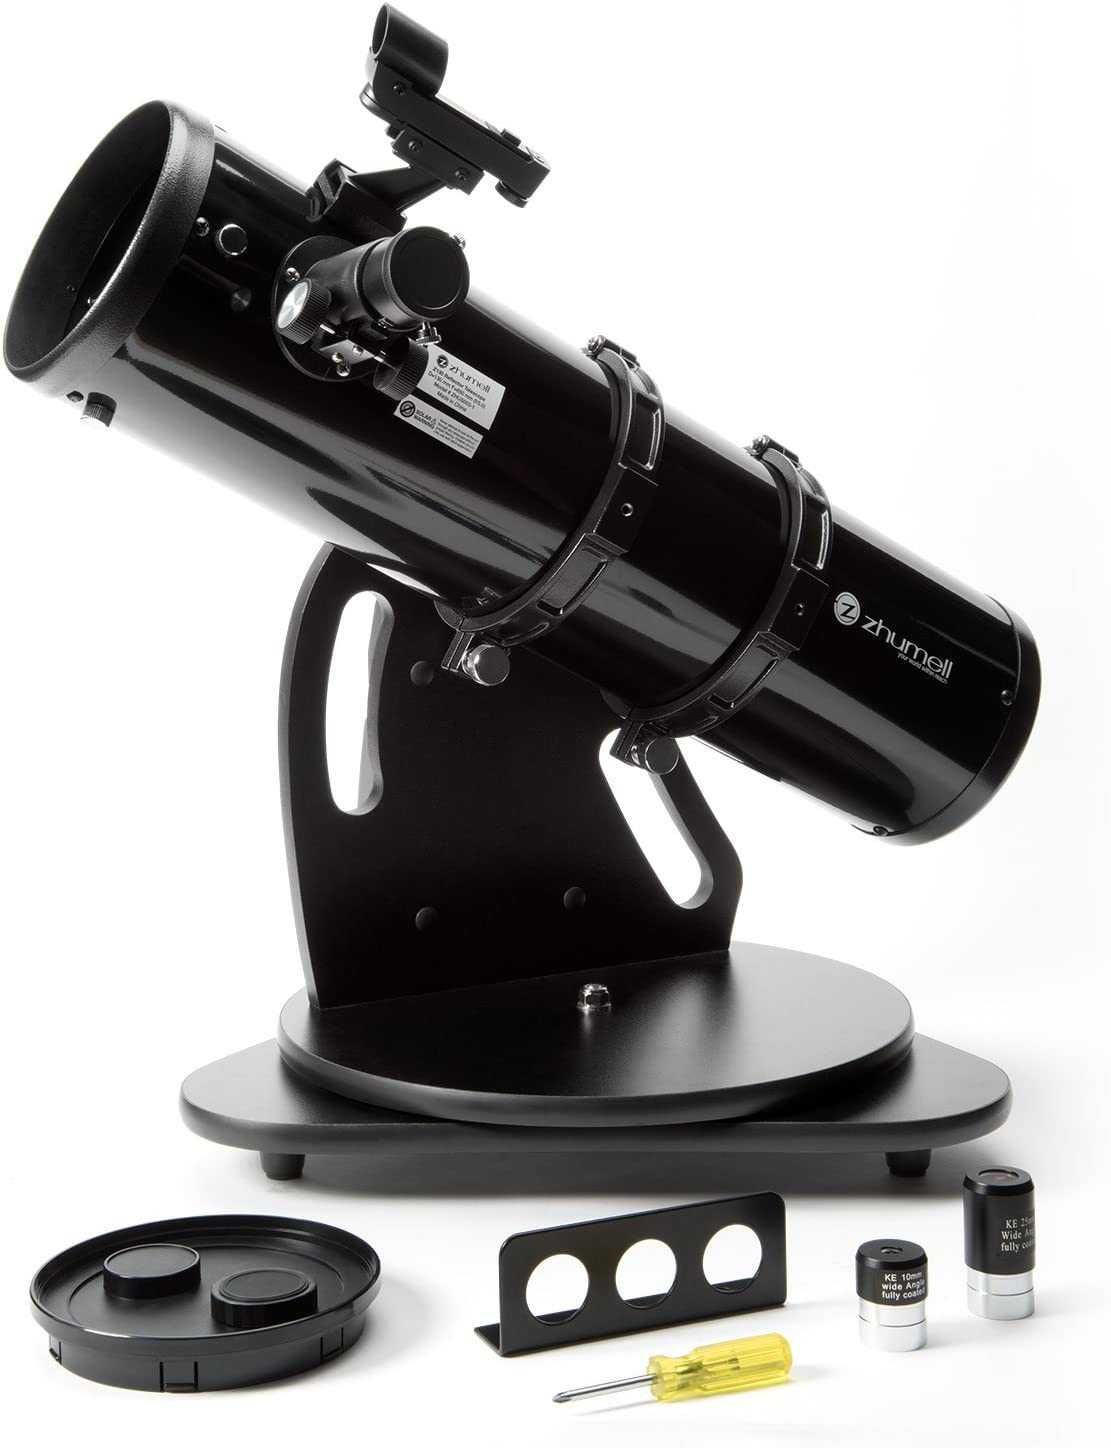 Телескоп  Zhumell Z130 dobsonian